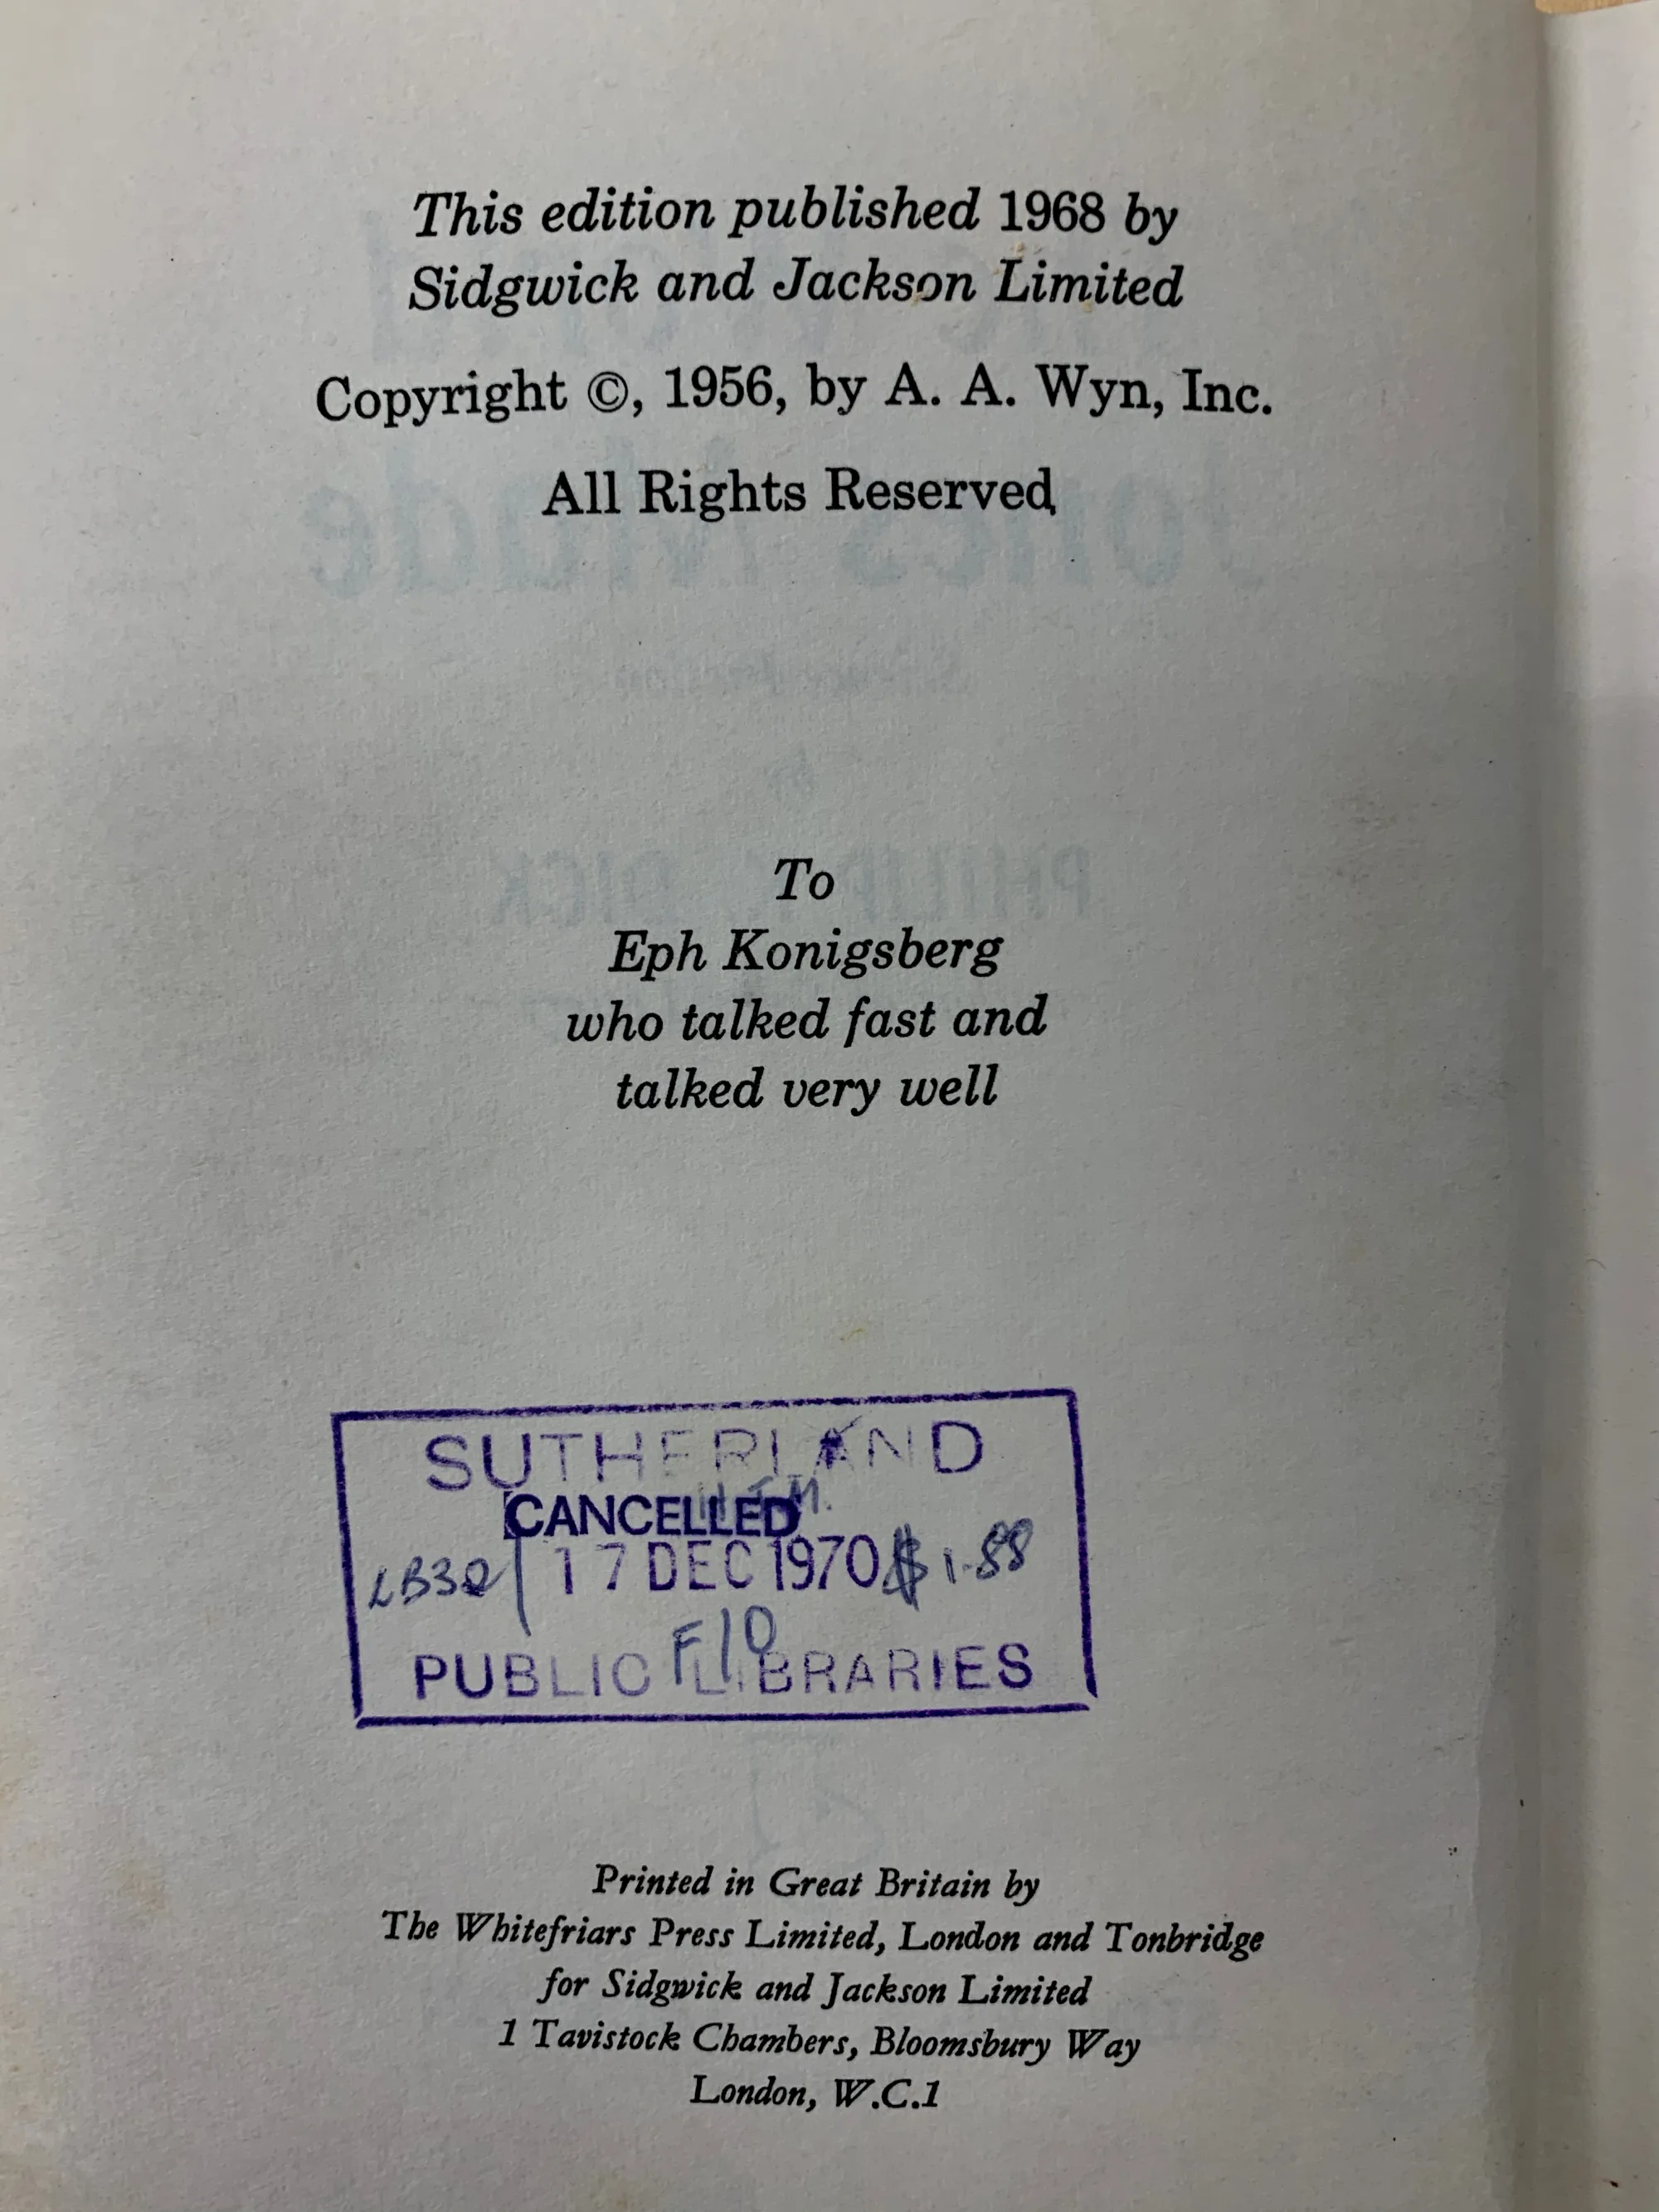 版权页，可见直至1968年，此书版权仍在Ace手里，A. A. Wyn即是Ace贪得无厌，压榨作者的老板